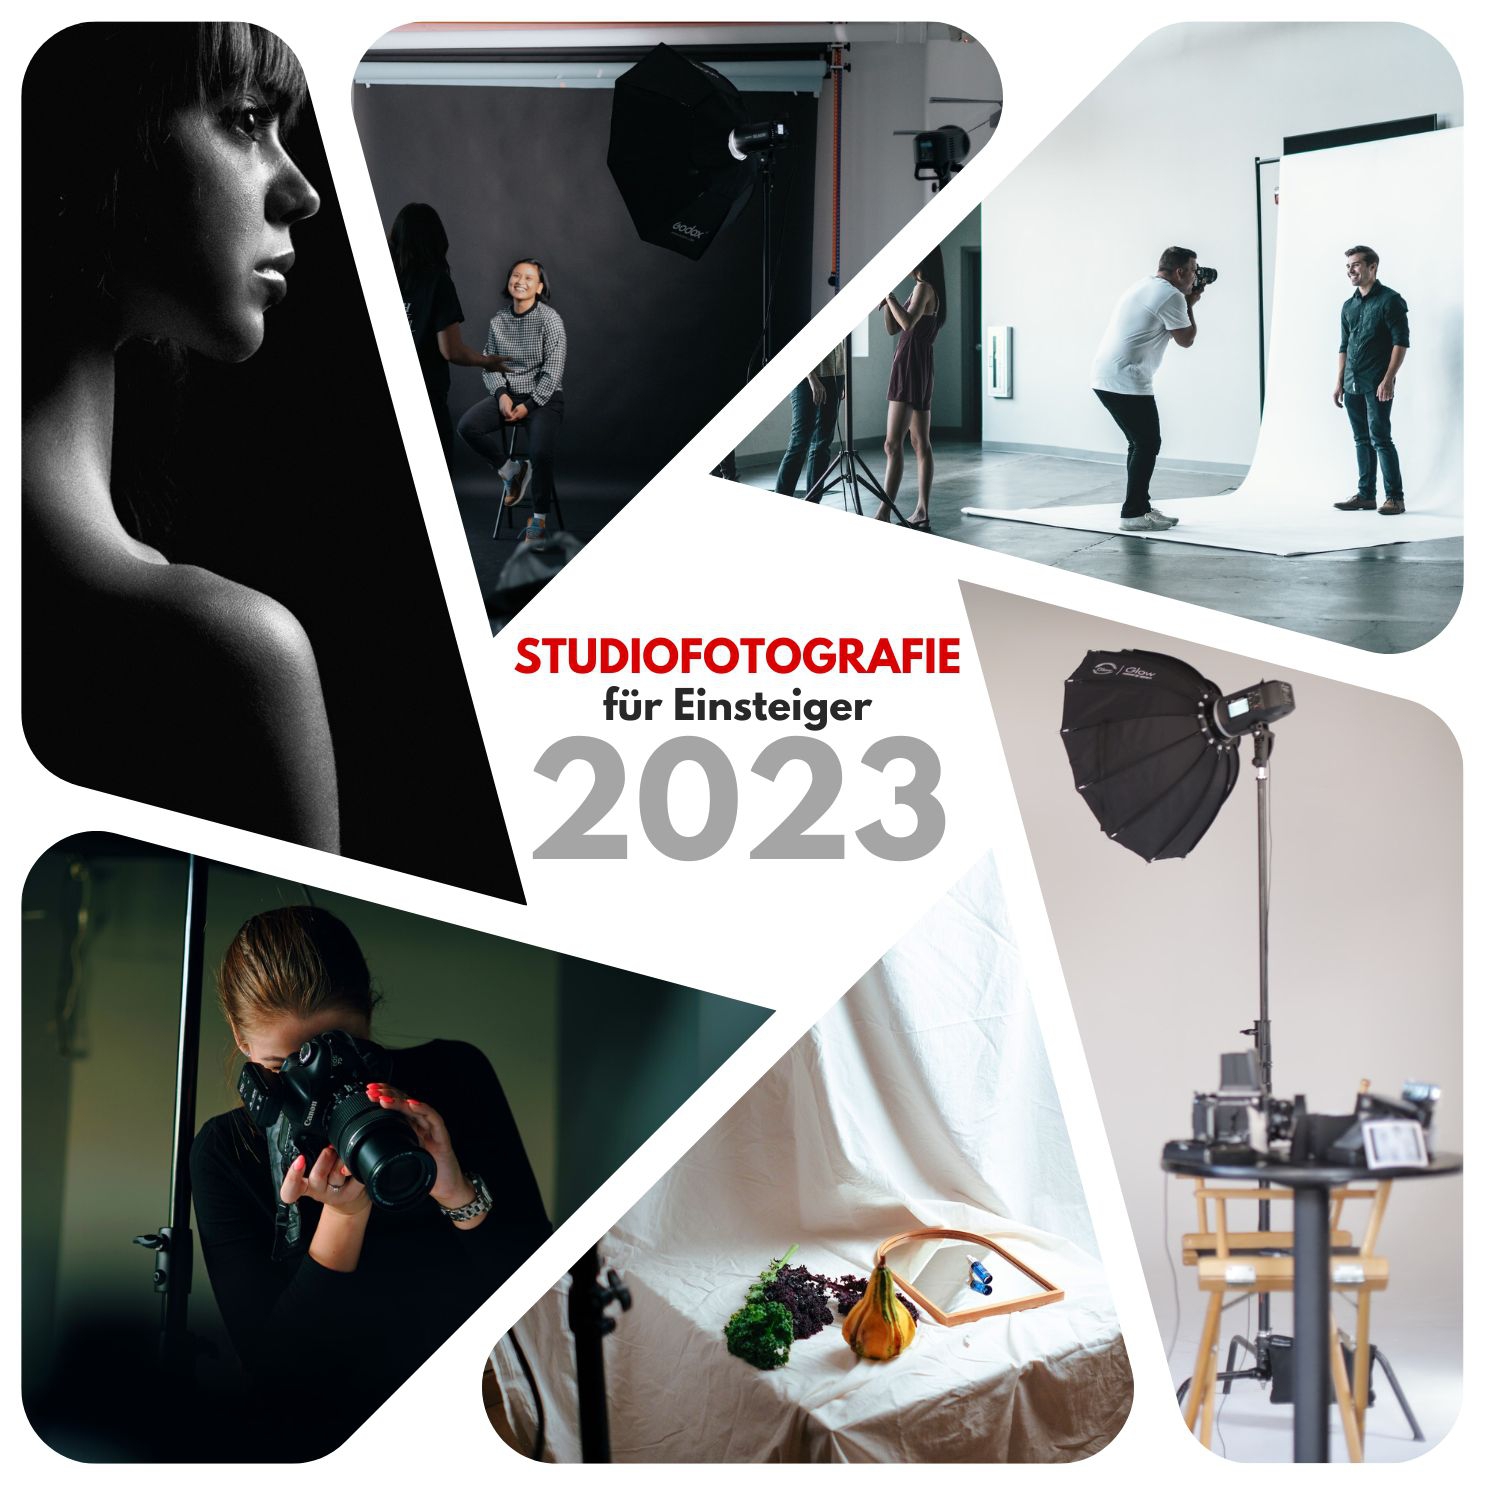 Workshop Studiofotografie für Einsteiger | 16.12.2023 | 09:30 - 14:00 Uhr